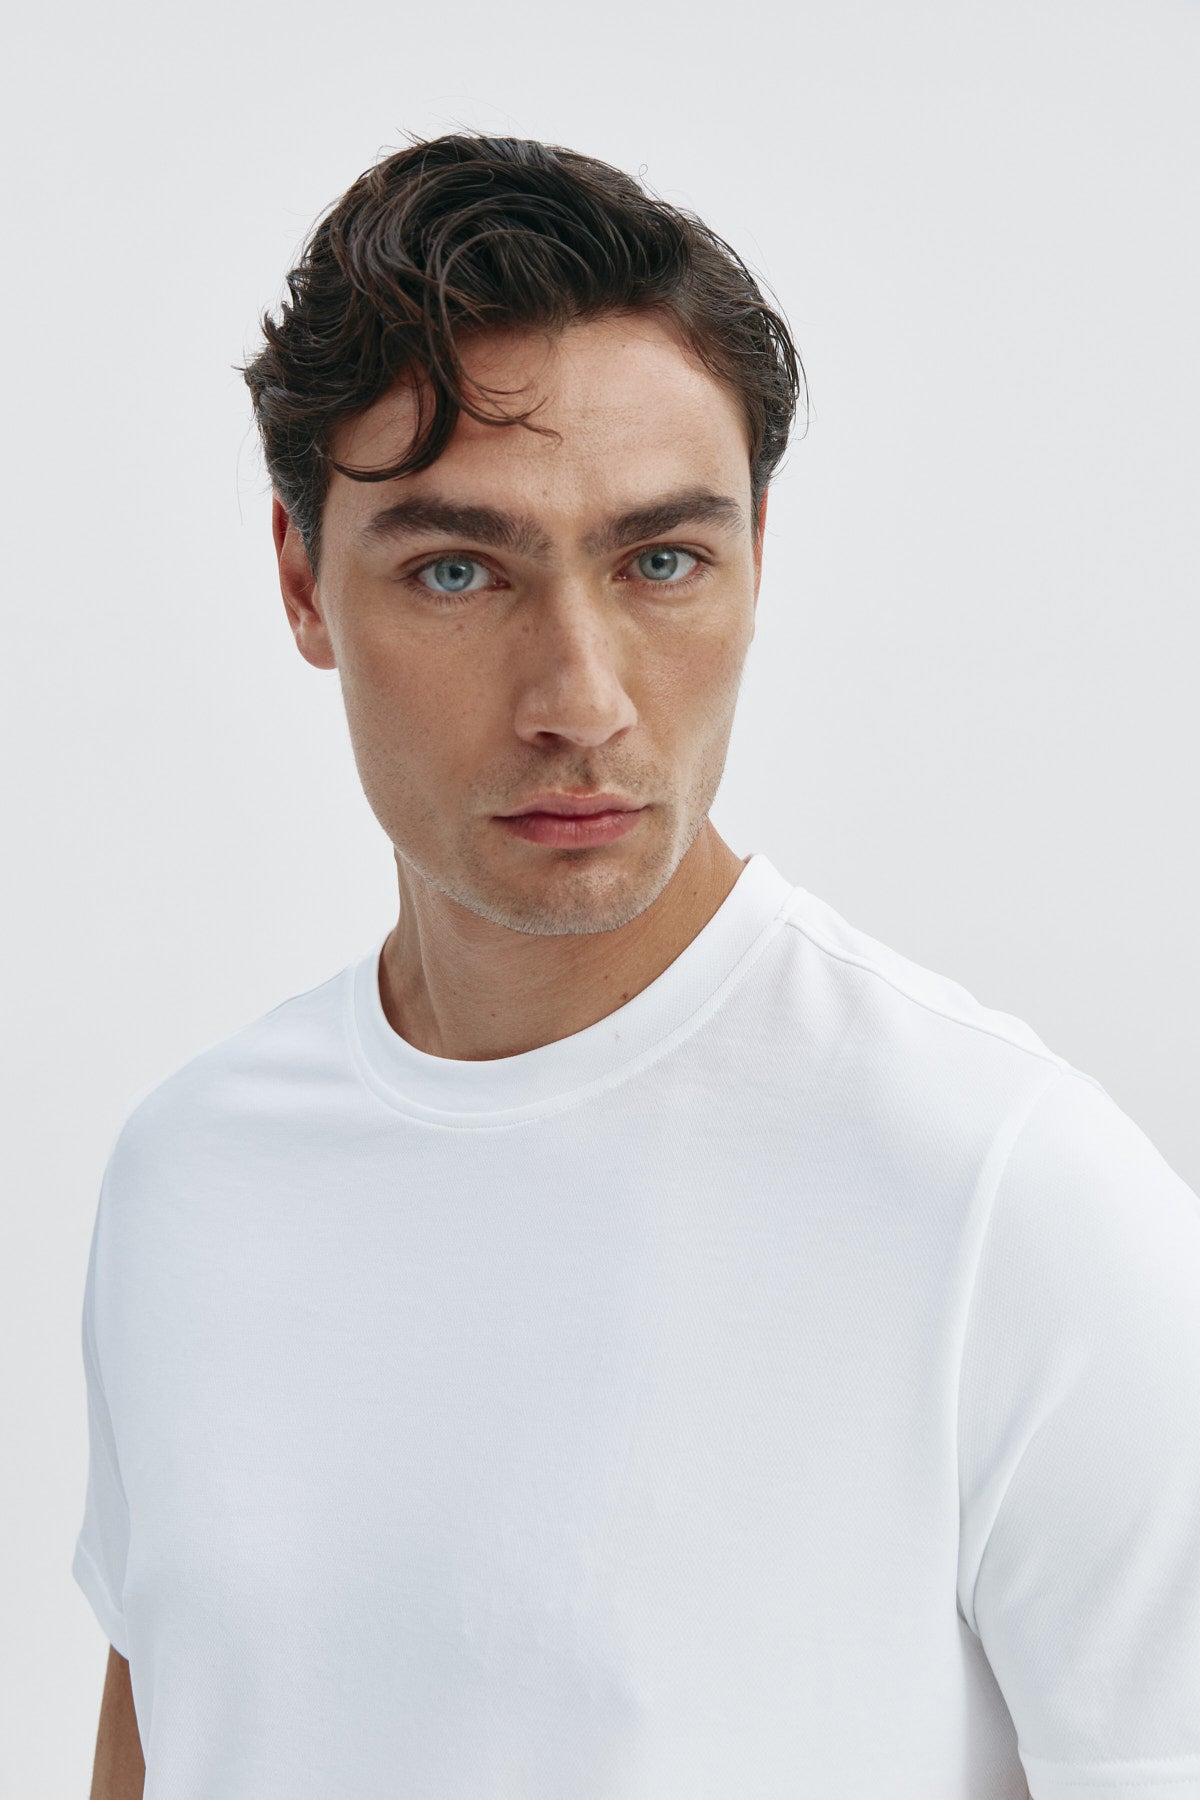 Camiseta de hombre estampada de rayas marino: Camiseta de hombre de rayas marino de manga corta, antiarrugas y antimanchas. Foto retrato.